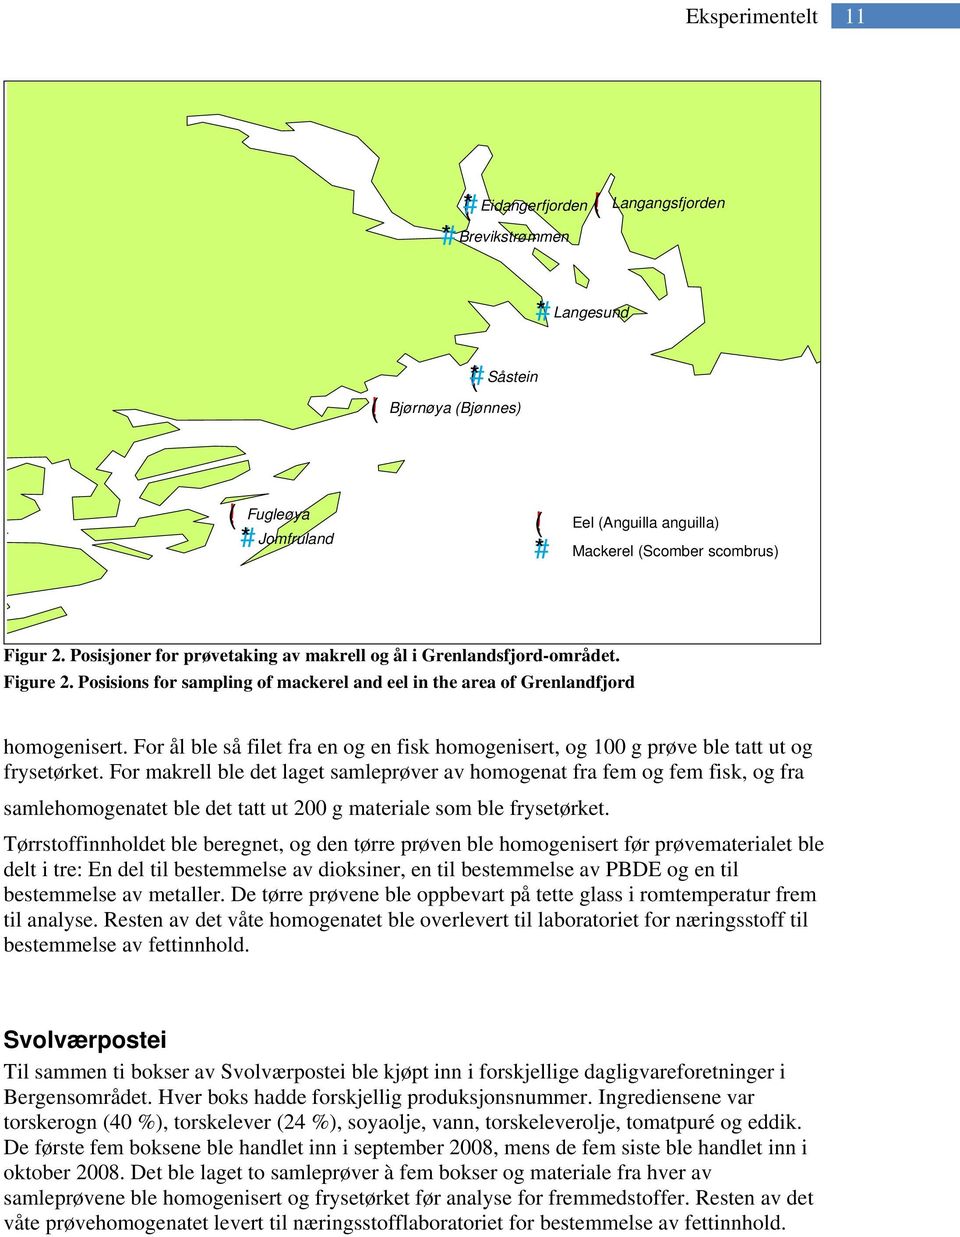 Posisions for sampling of mackerel and eel in the area of Grenlandfjord homogenisert. For ål ble så filet fra en og en fisk homogenisert, og 100 g prøve ble tatt ut og frysetørket.